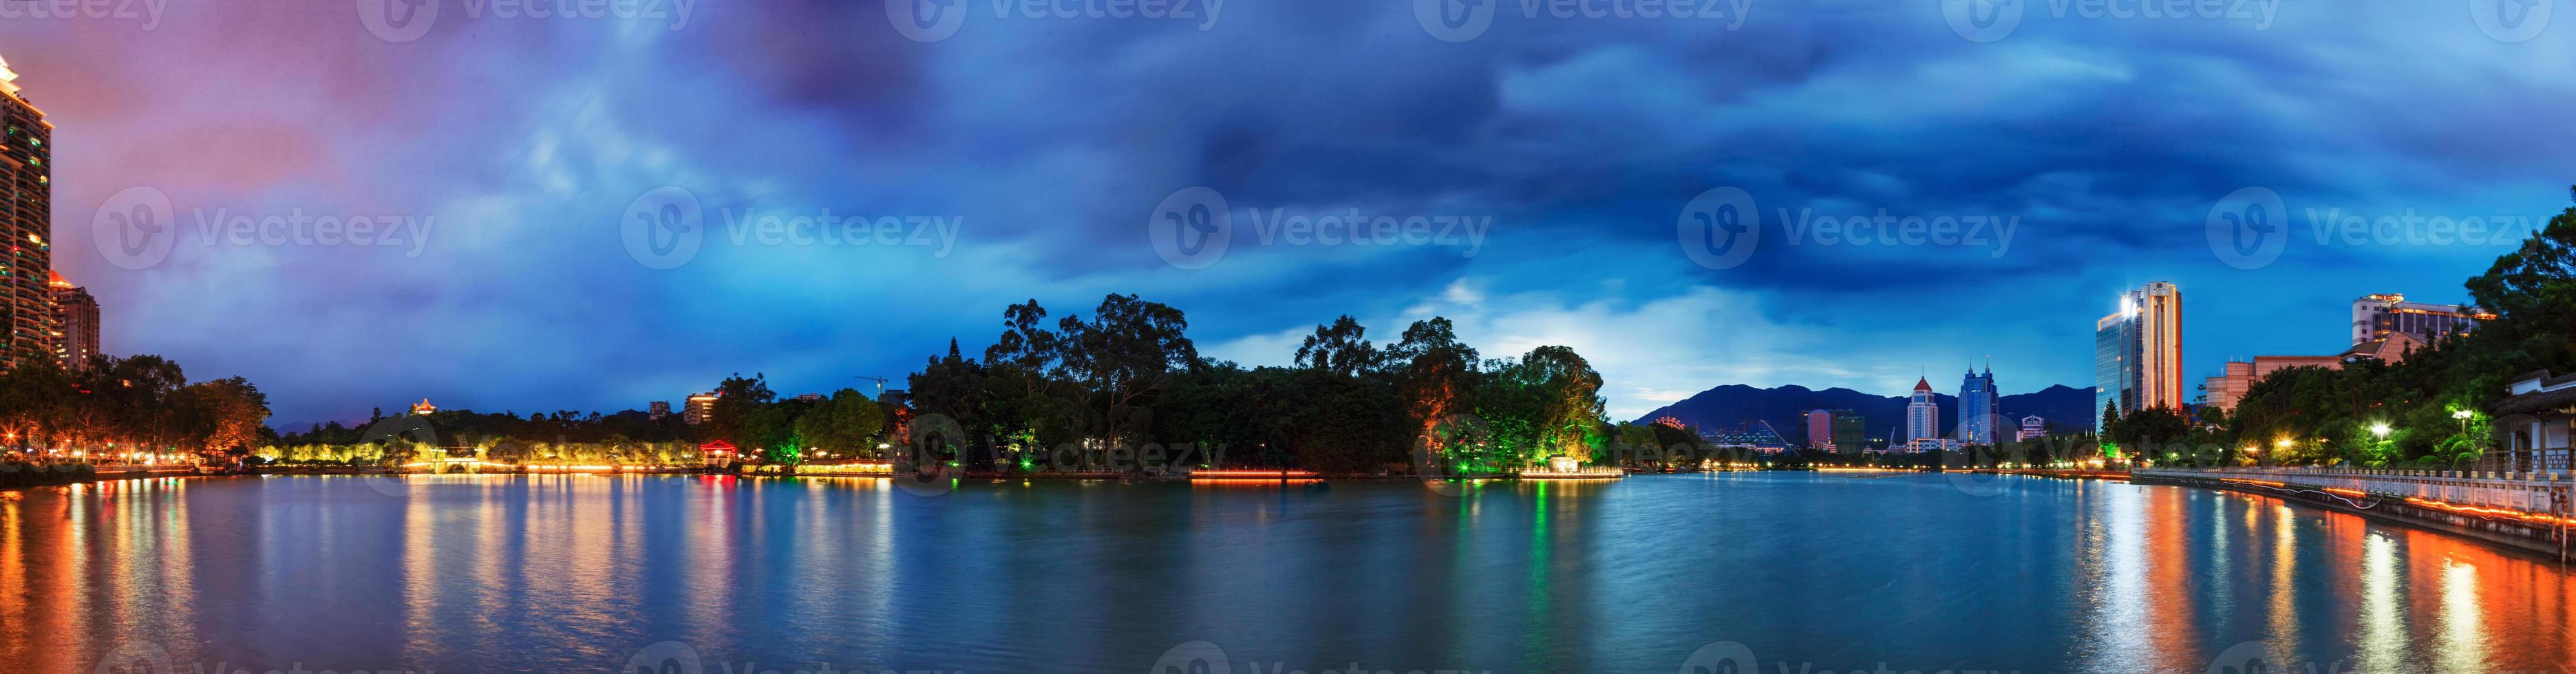 dramatisk himmel över ett vattenpark i fuzhou, Kina foto